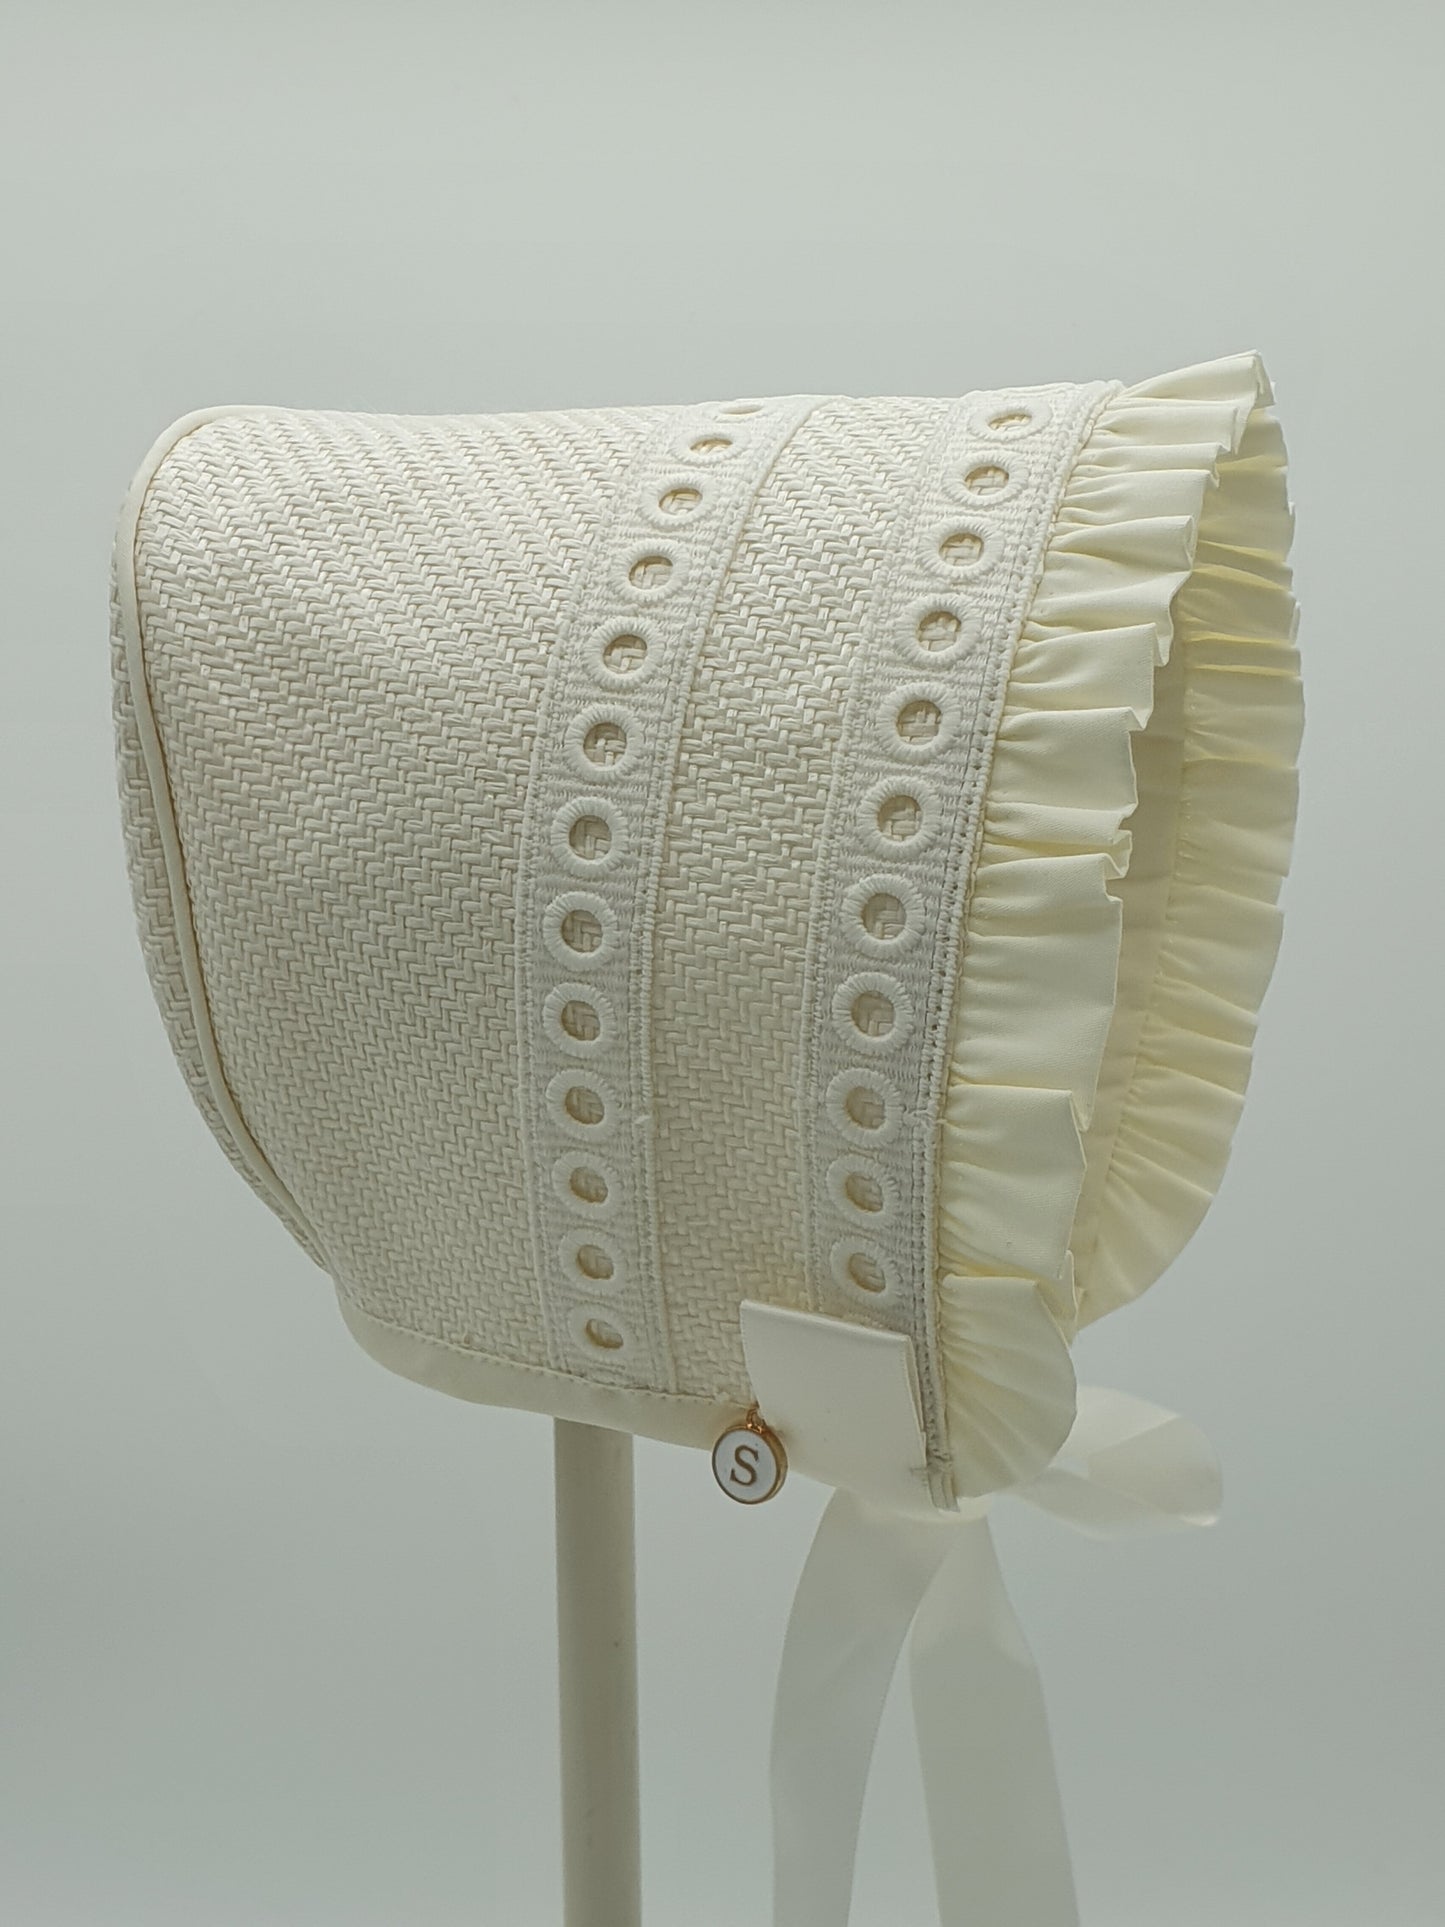 Exclusive Bonnet, Cream Weave with lace trim